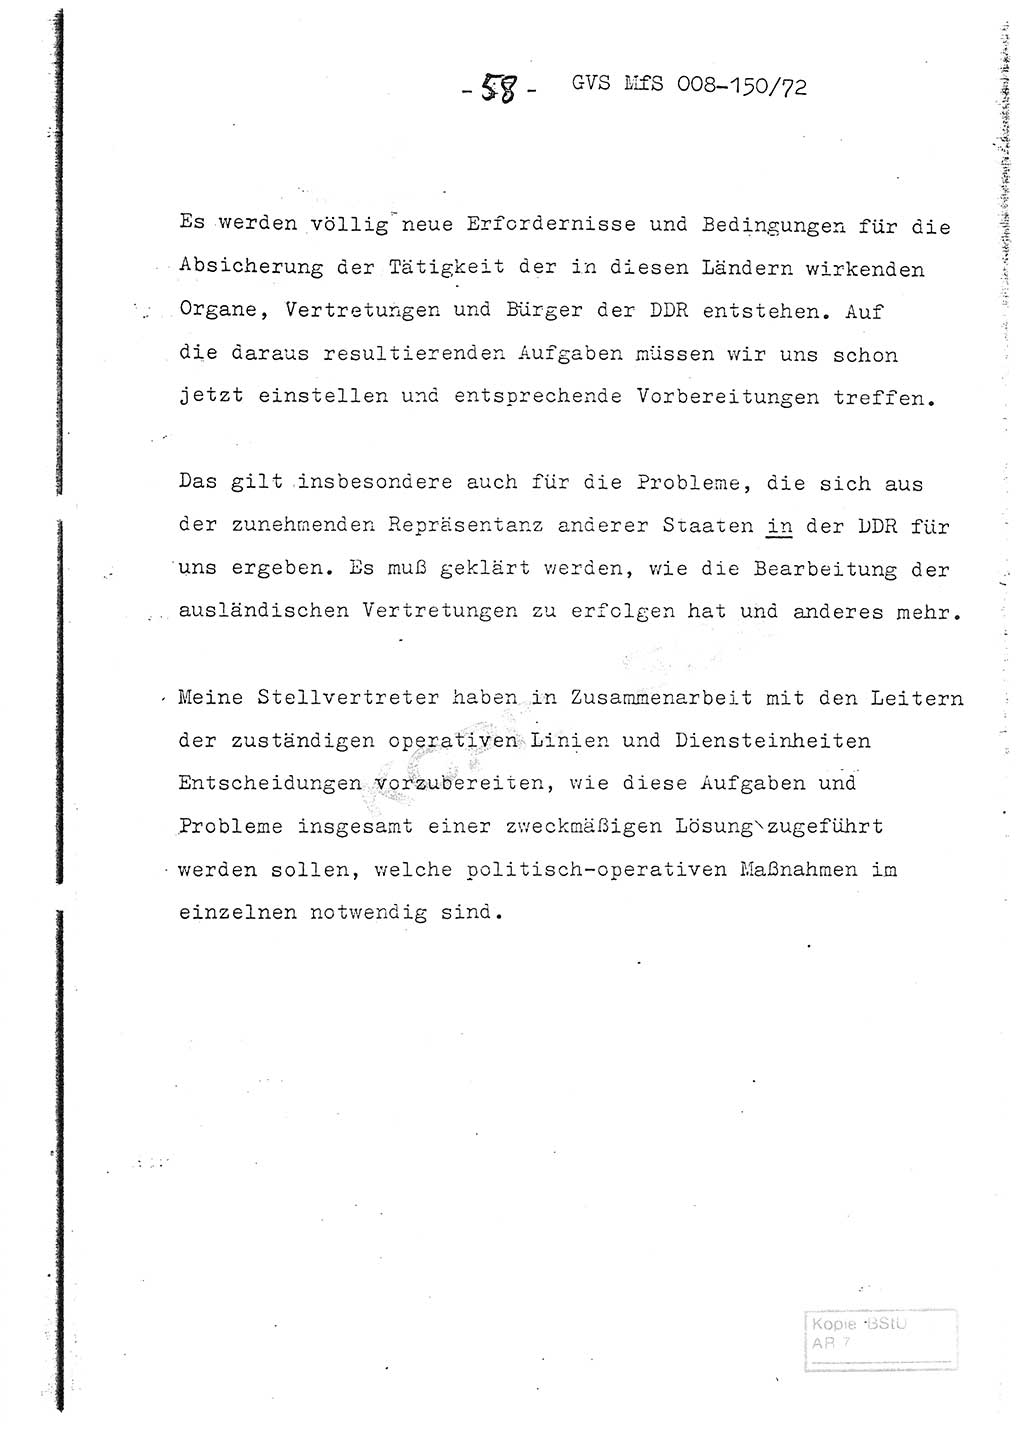 Referat (Entwurf) des Genossen Minister (Generaloberst Erich Mielke) auf der Dienstkonferenz 1972, Ministerium für Staatssicherheit (MfS) [Deutsche Demokratische Republik (DDR)], Der Minister, Geheime Verschlußsache (GVS) 008-150/72, Berlin 25.2.1972, Seite 58 (Ref. Entw. DK MfS DDR Min. GVS 008-150/72 1972, S. 58)